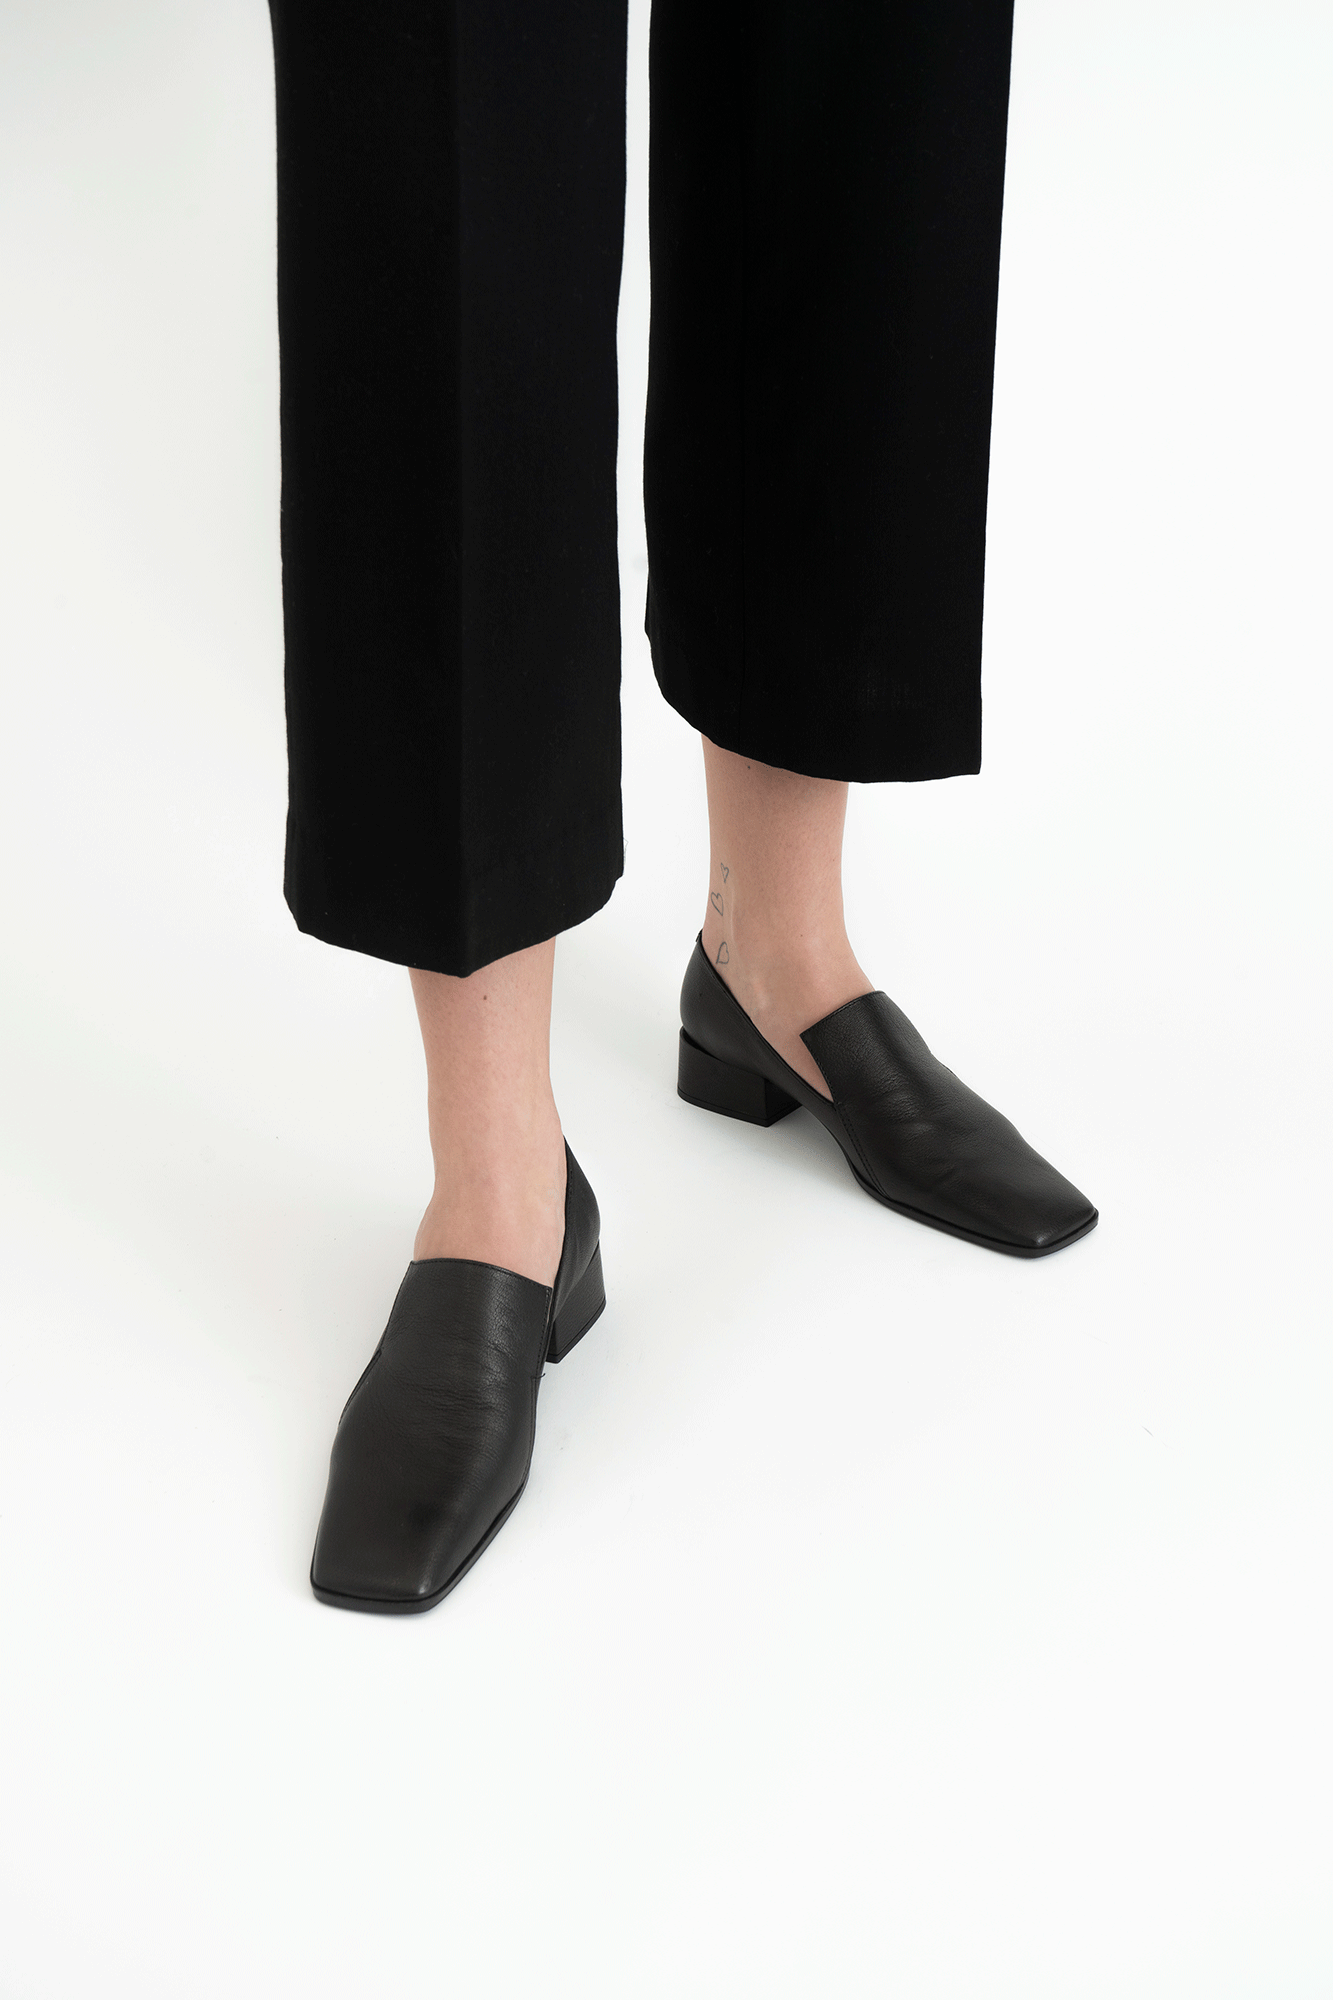 Amelia loafers, sort læder